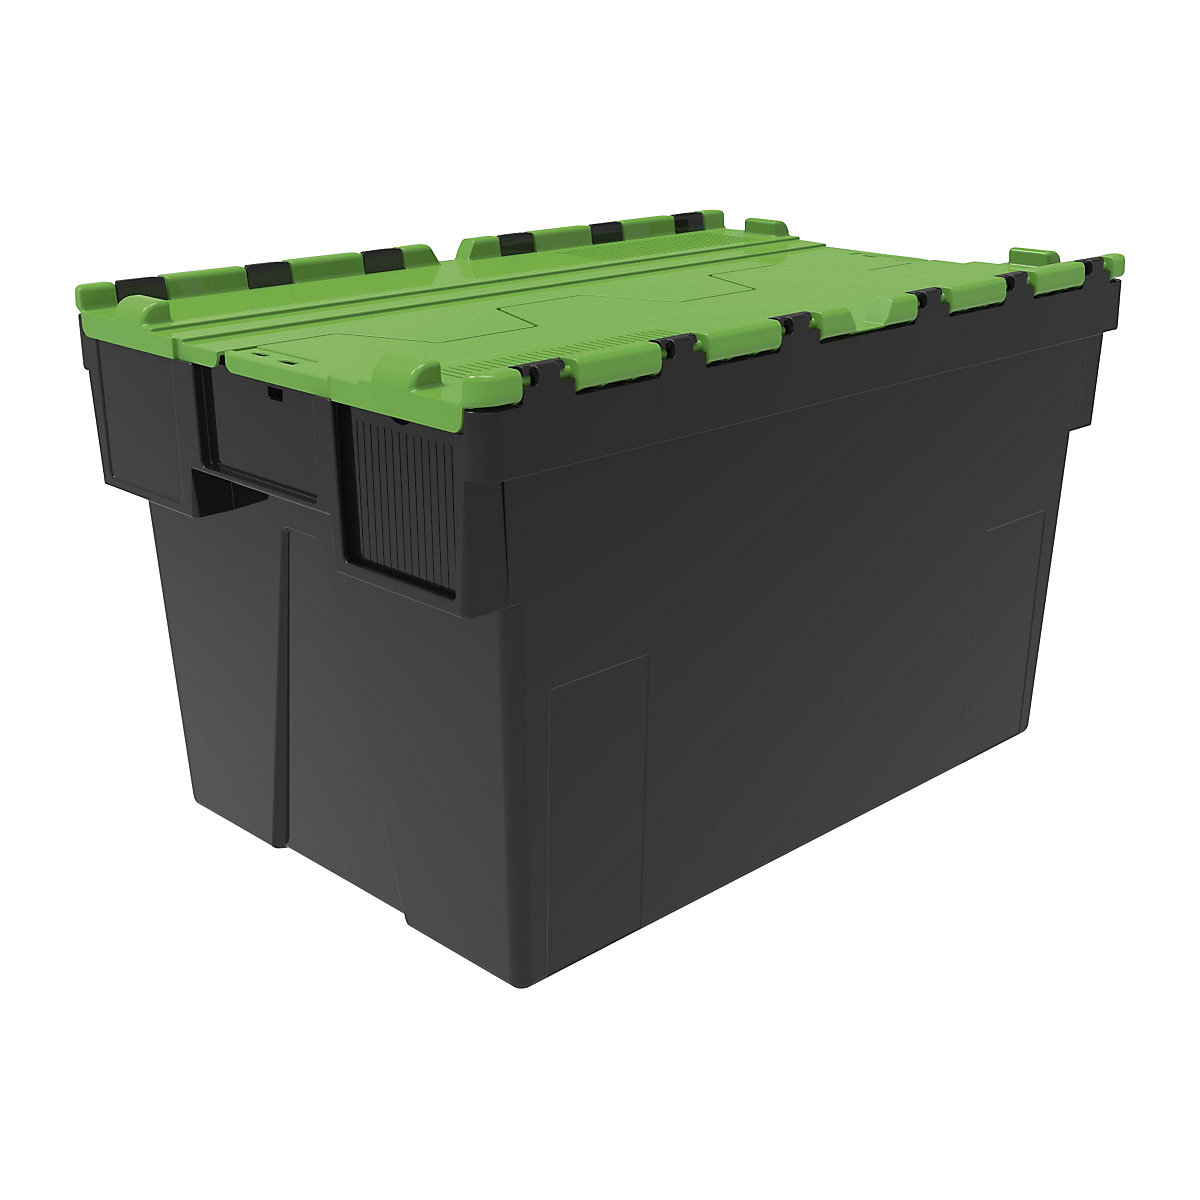 Többször használható rakásolható tároló, h x szé x ma 600 x 400 x 365 mm, cs. e. 5 db, fekete színben, zöld fedéllel